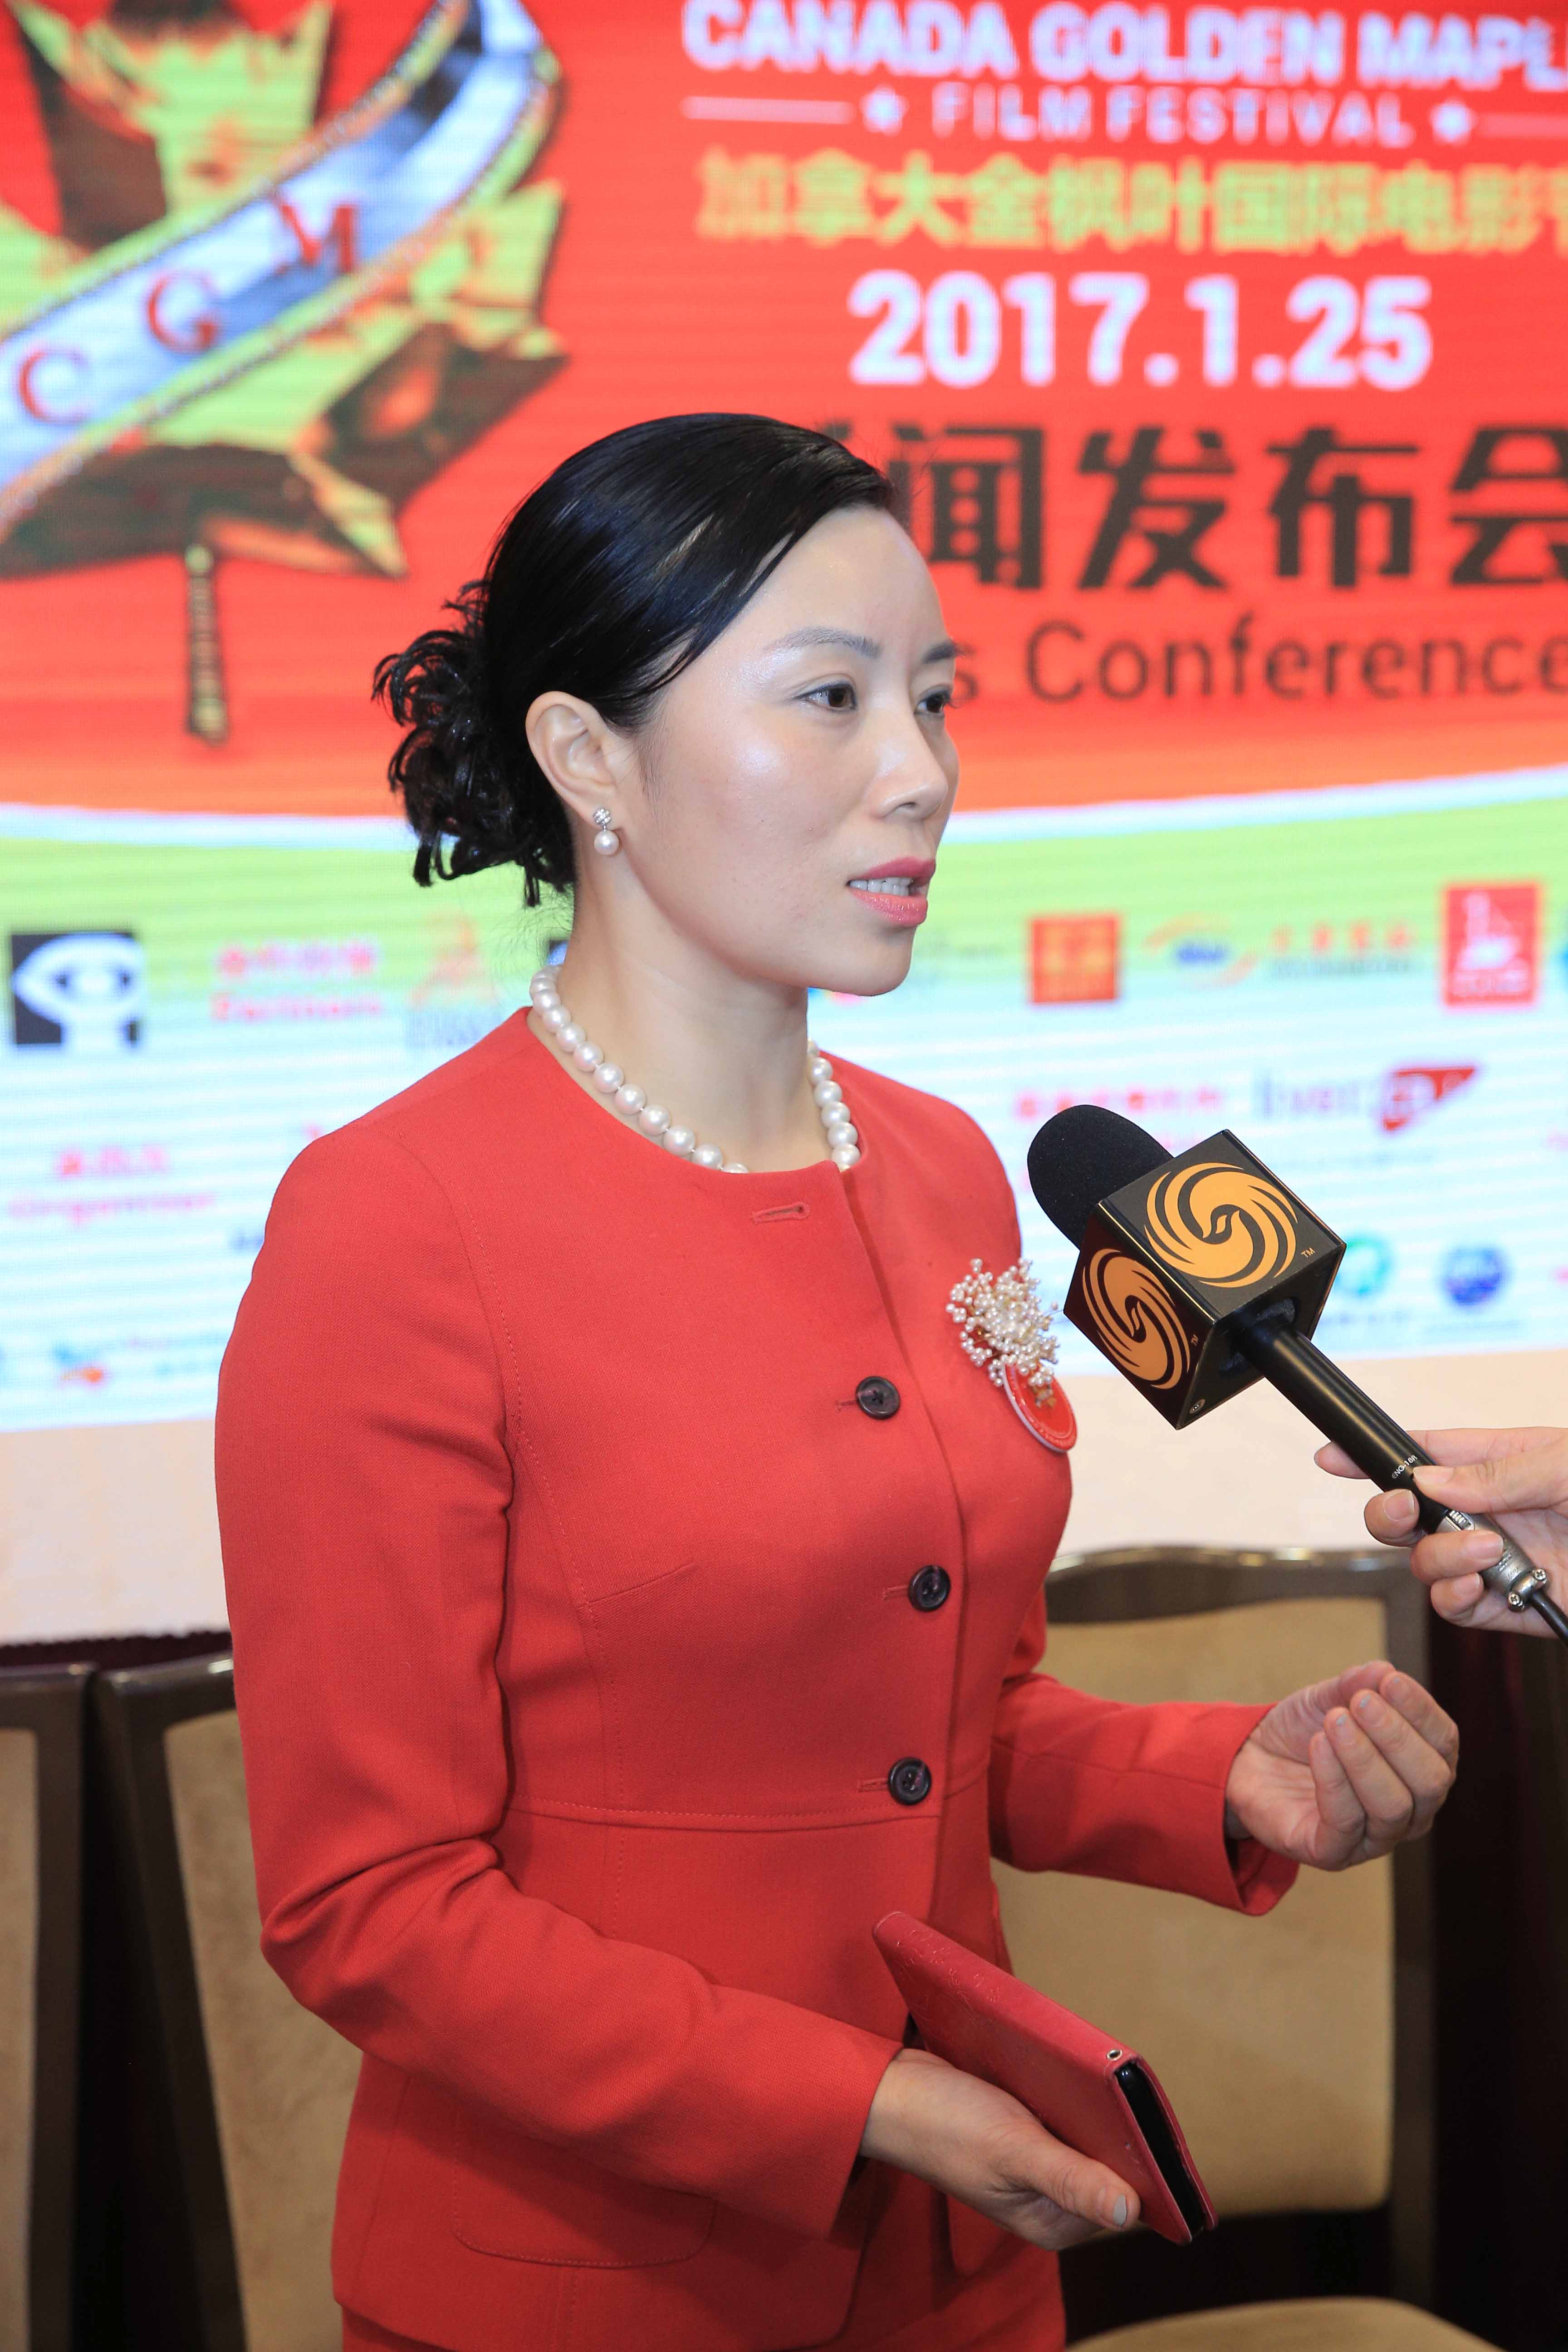 Hillary Wang at CGM press conference